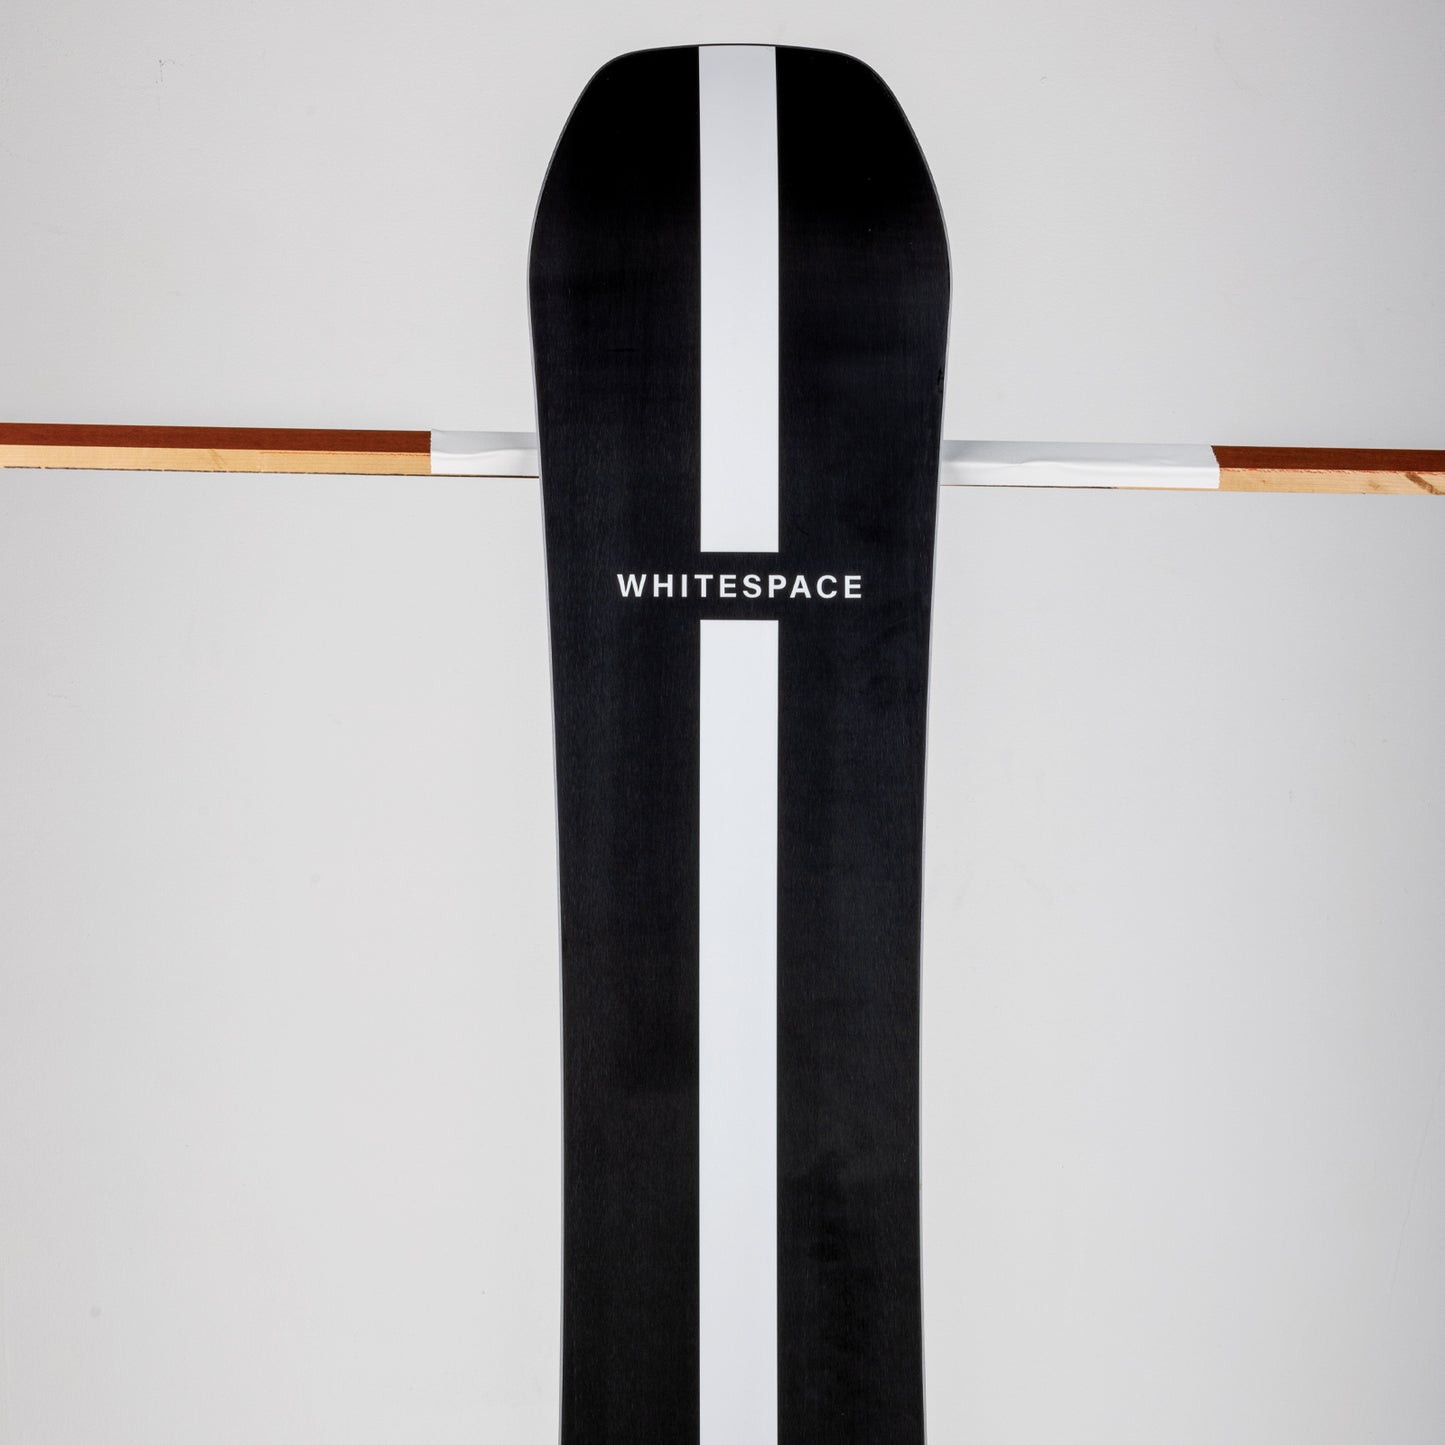 Pre-Order Freestyle Shaun White Pro Snowboard WHITESPACE